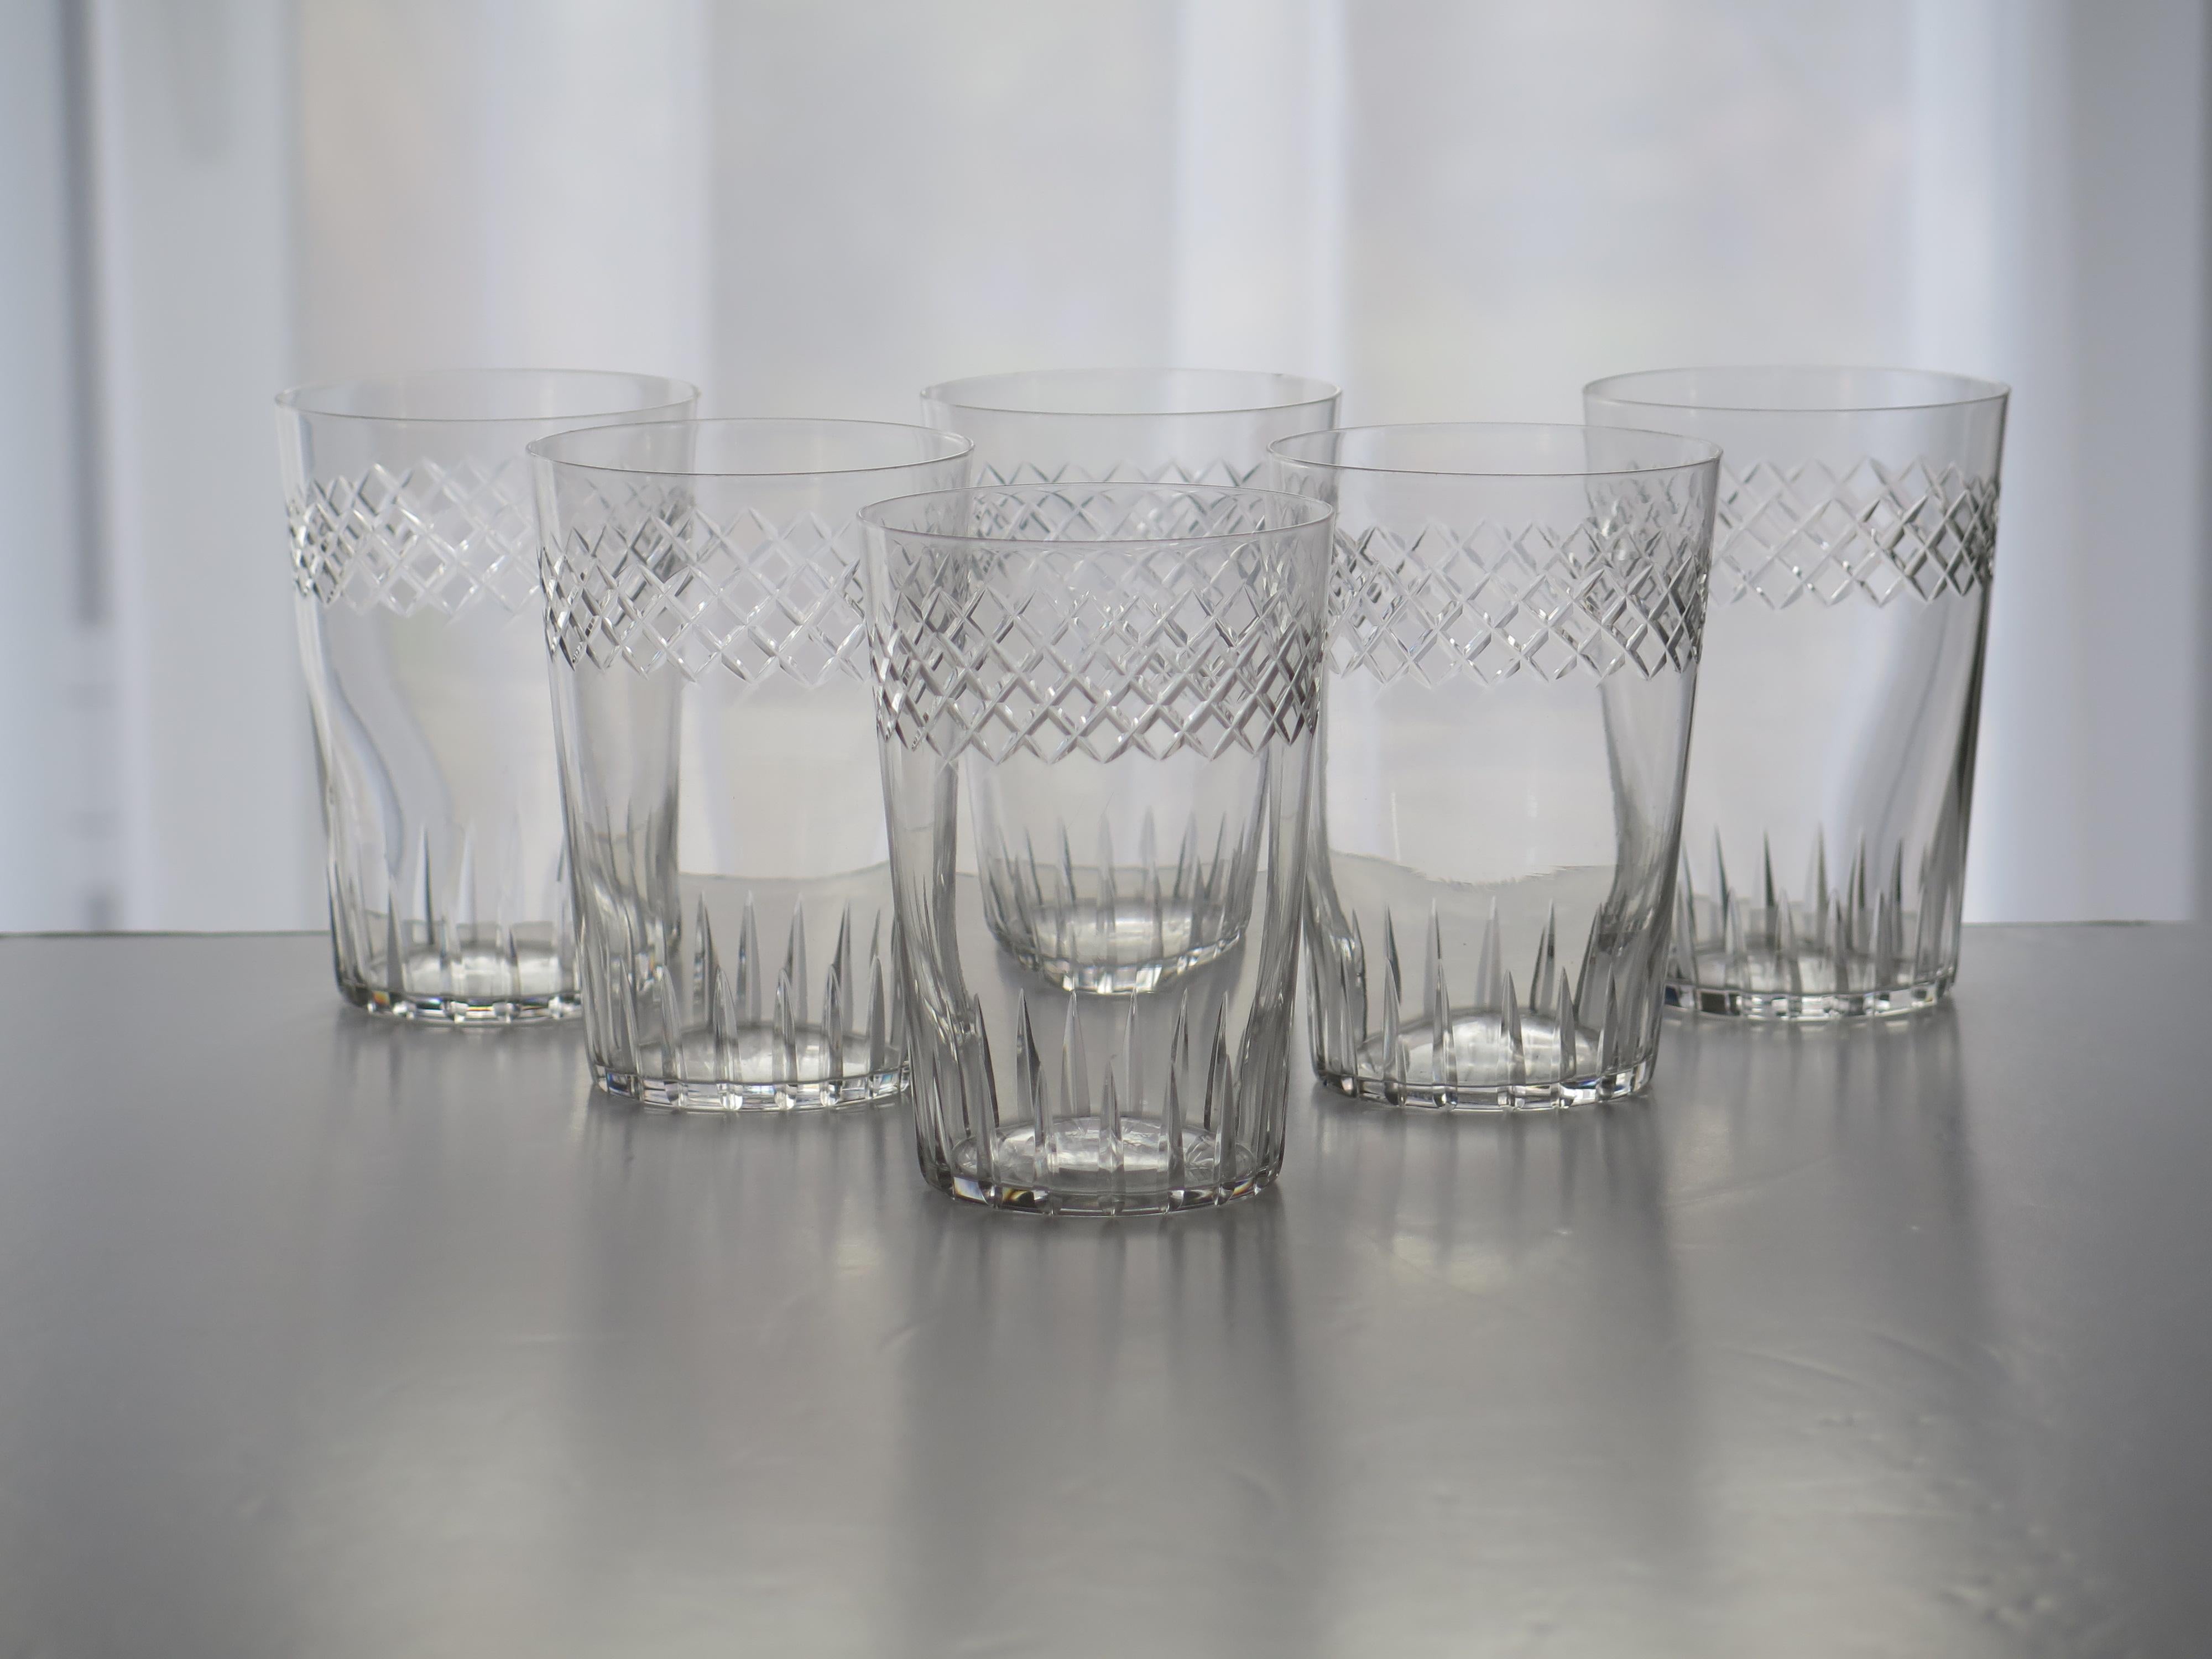 Il s'agit d'un bon ensemble de six gobelets ou verres à boire en cristal gravé, datant de la période édouardienne, vers 1905.

Chaque gobelet en verre a une forme circulaire légèrement effilée, décorée d'un motif horizontal gravé sur sa moitié